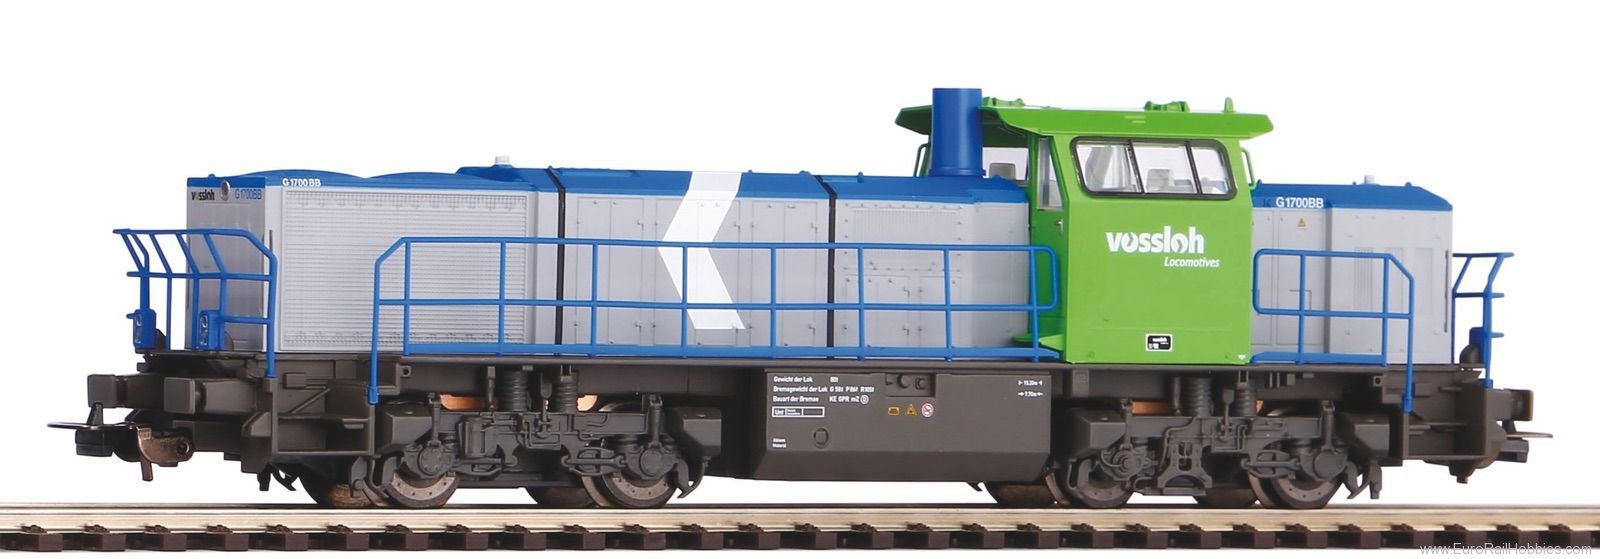 Piko 59075 BB1700 Diesel locomotive 'Vossloh' era VI; AC